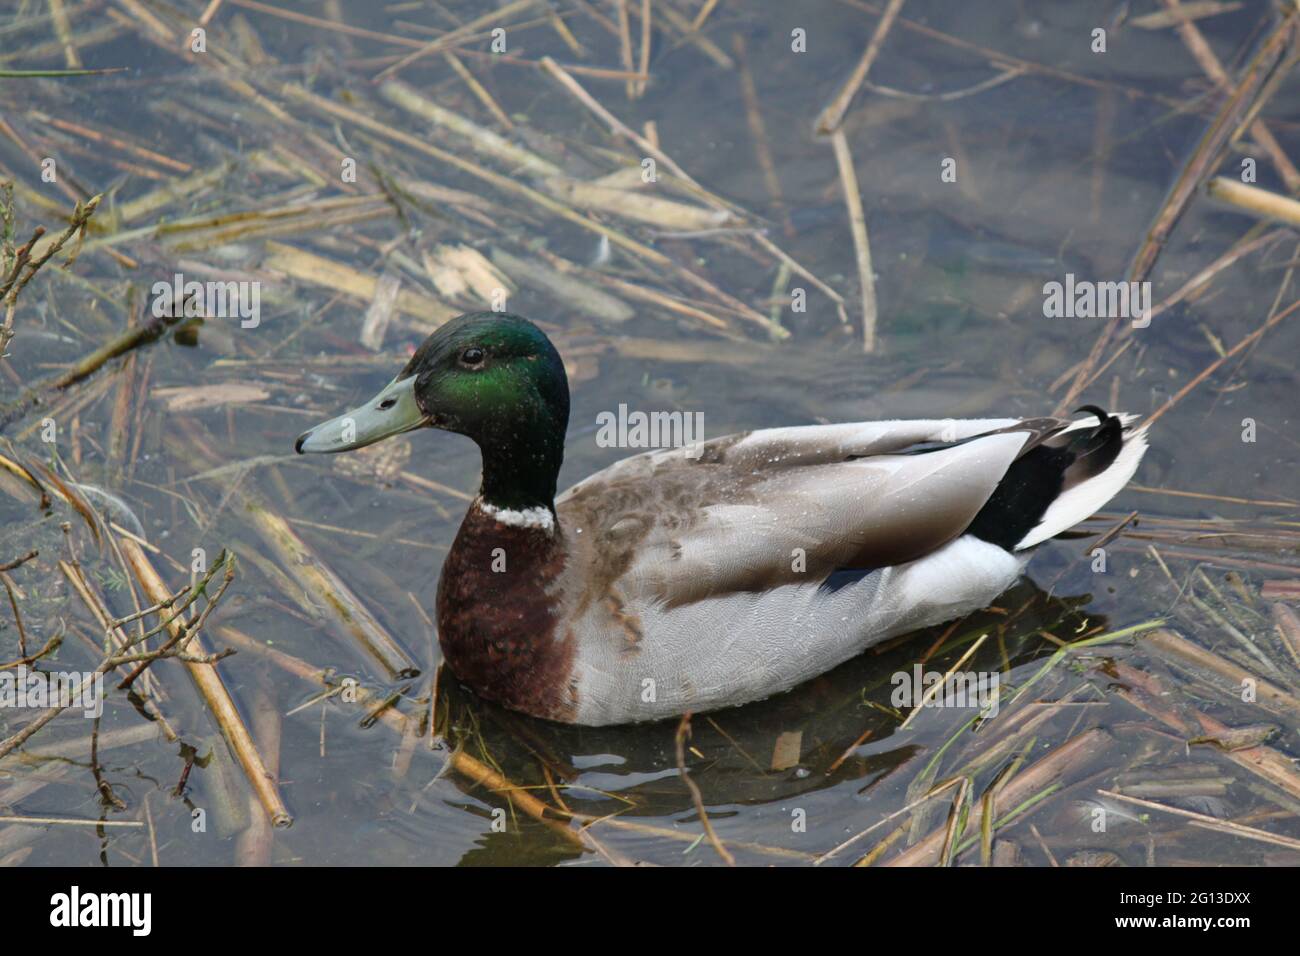 Mallard duck swimming amongst the reeds. Wild ducks Scottish wildlife observation and habitat. Stock Photo